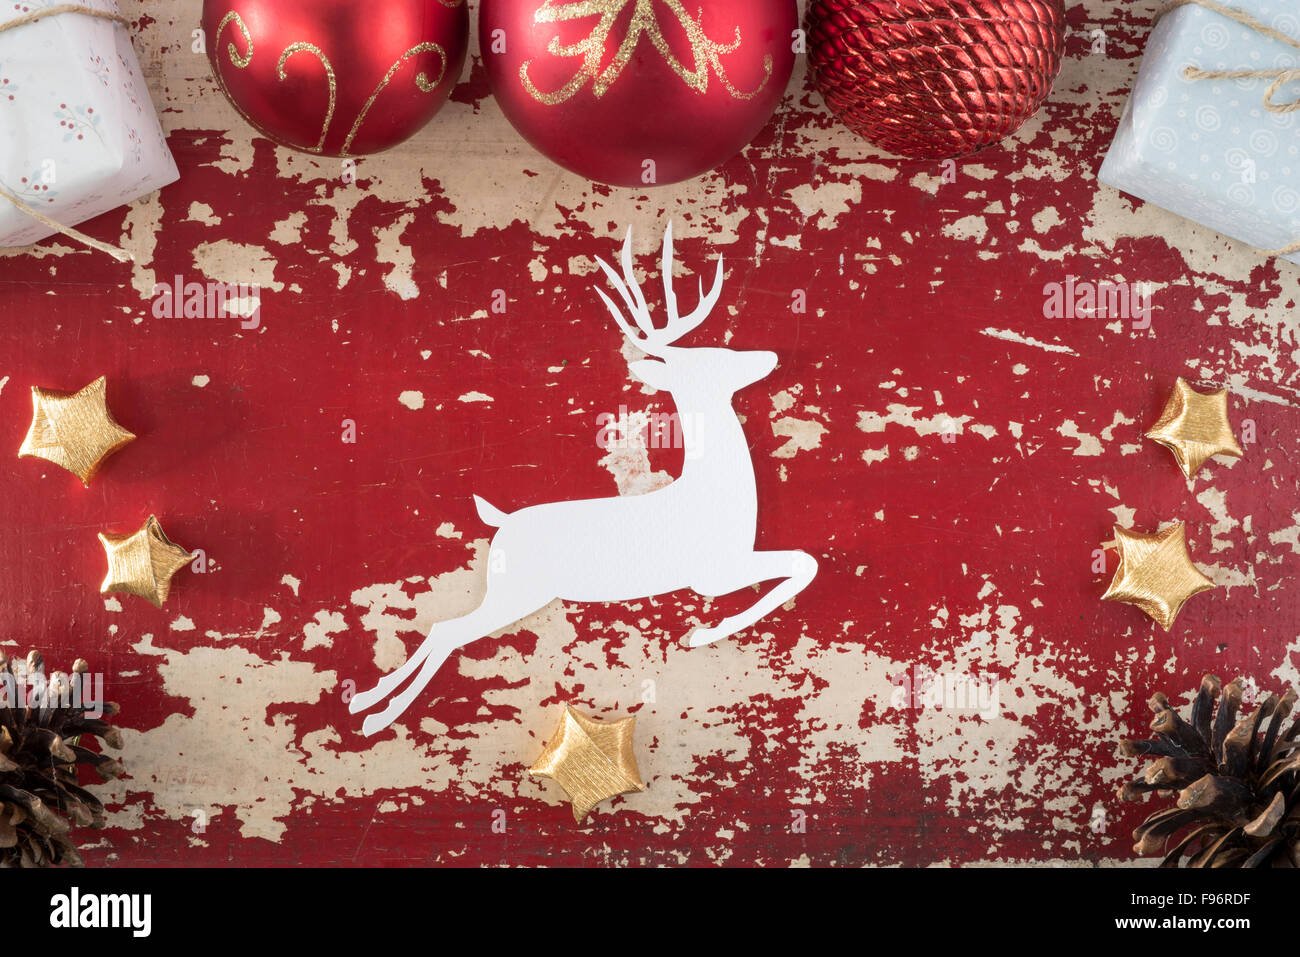 Joyeux Noël Bonne Année haut Afficher carte de souhaits avec fond silhouette cerf papier et éléments de décoration de vacances Banque D'Images